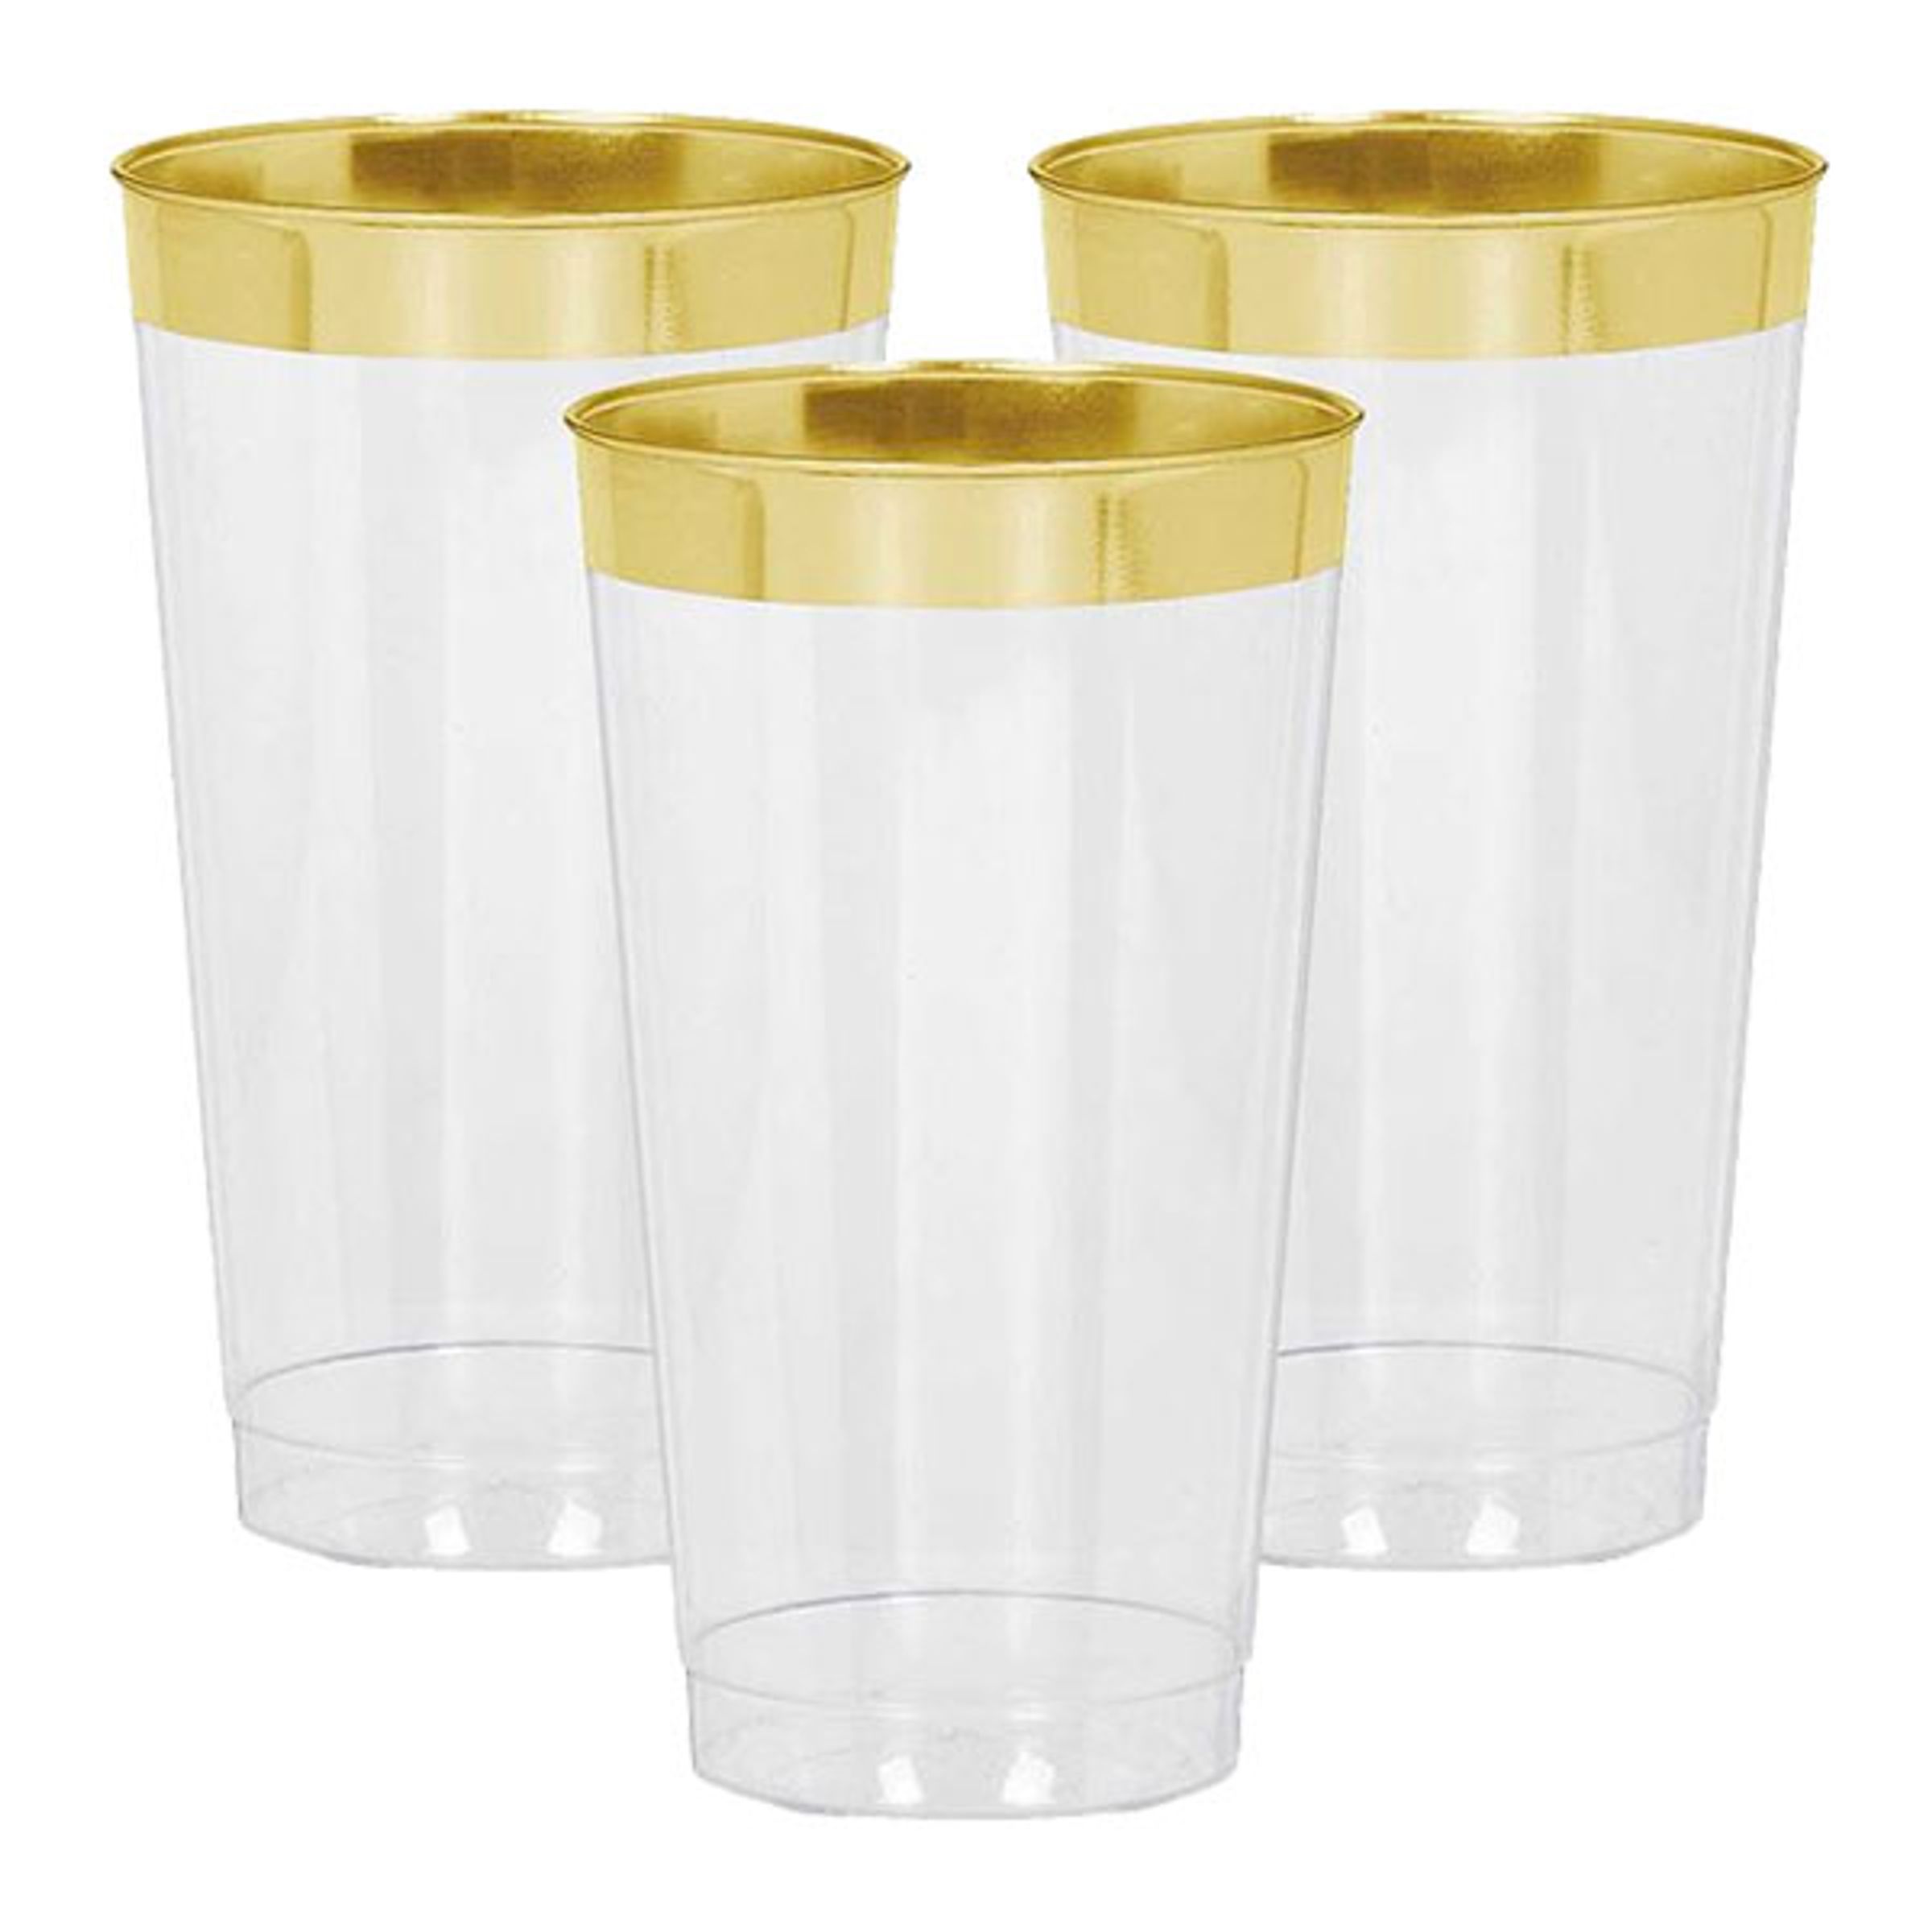 Drinkglas i Plast Premium Guldkant - 16-pack